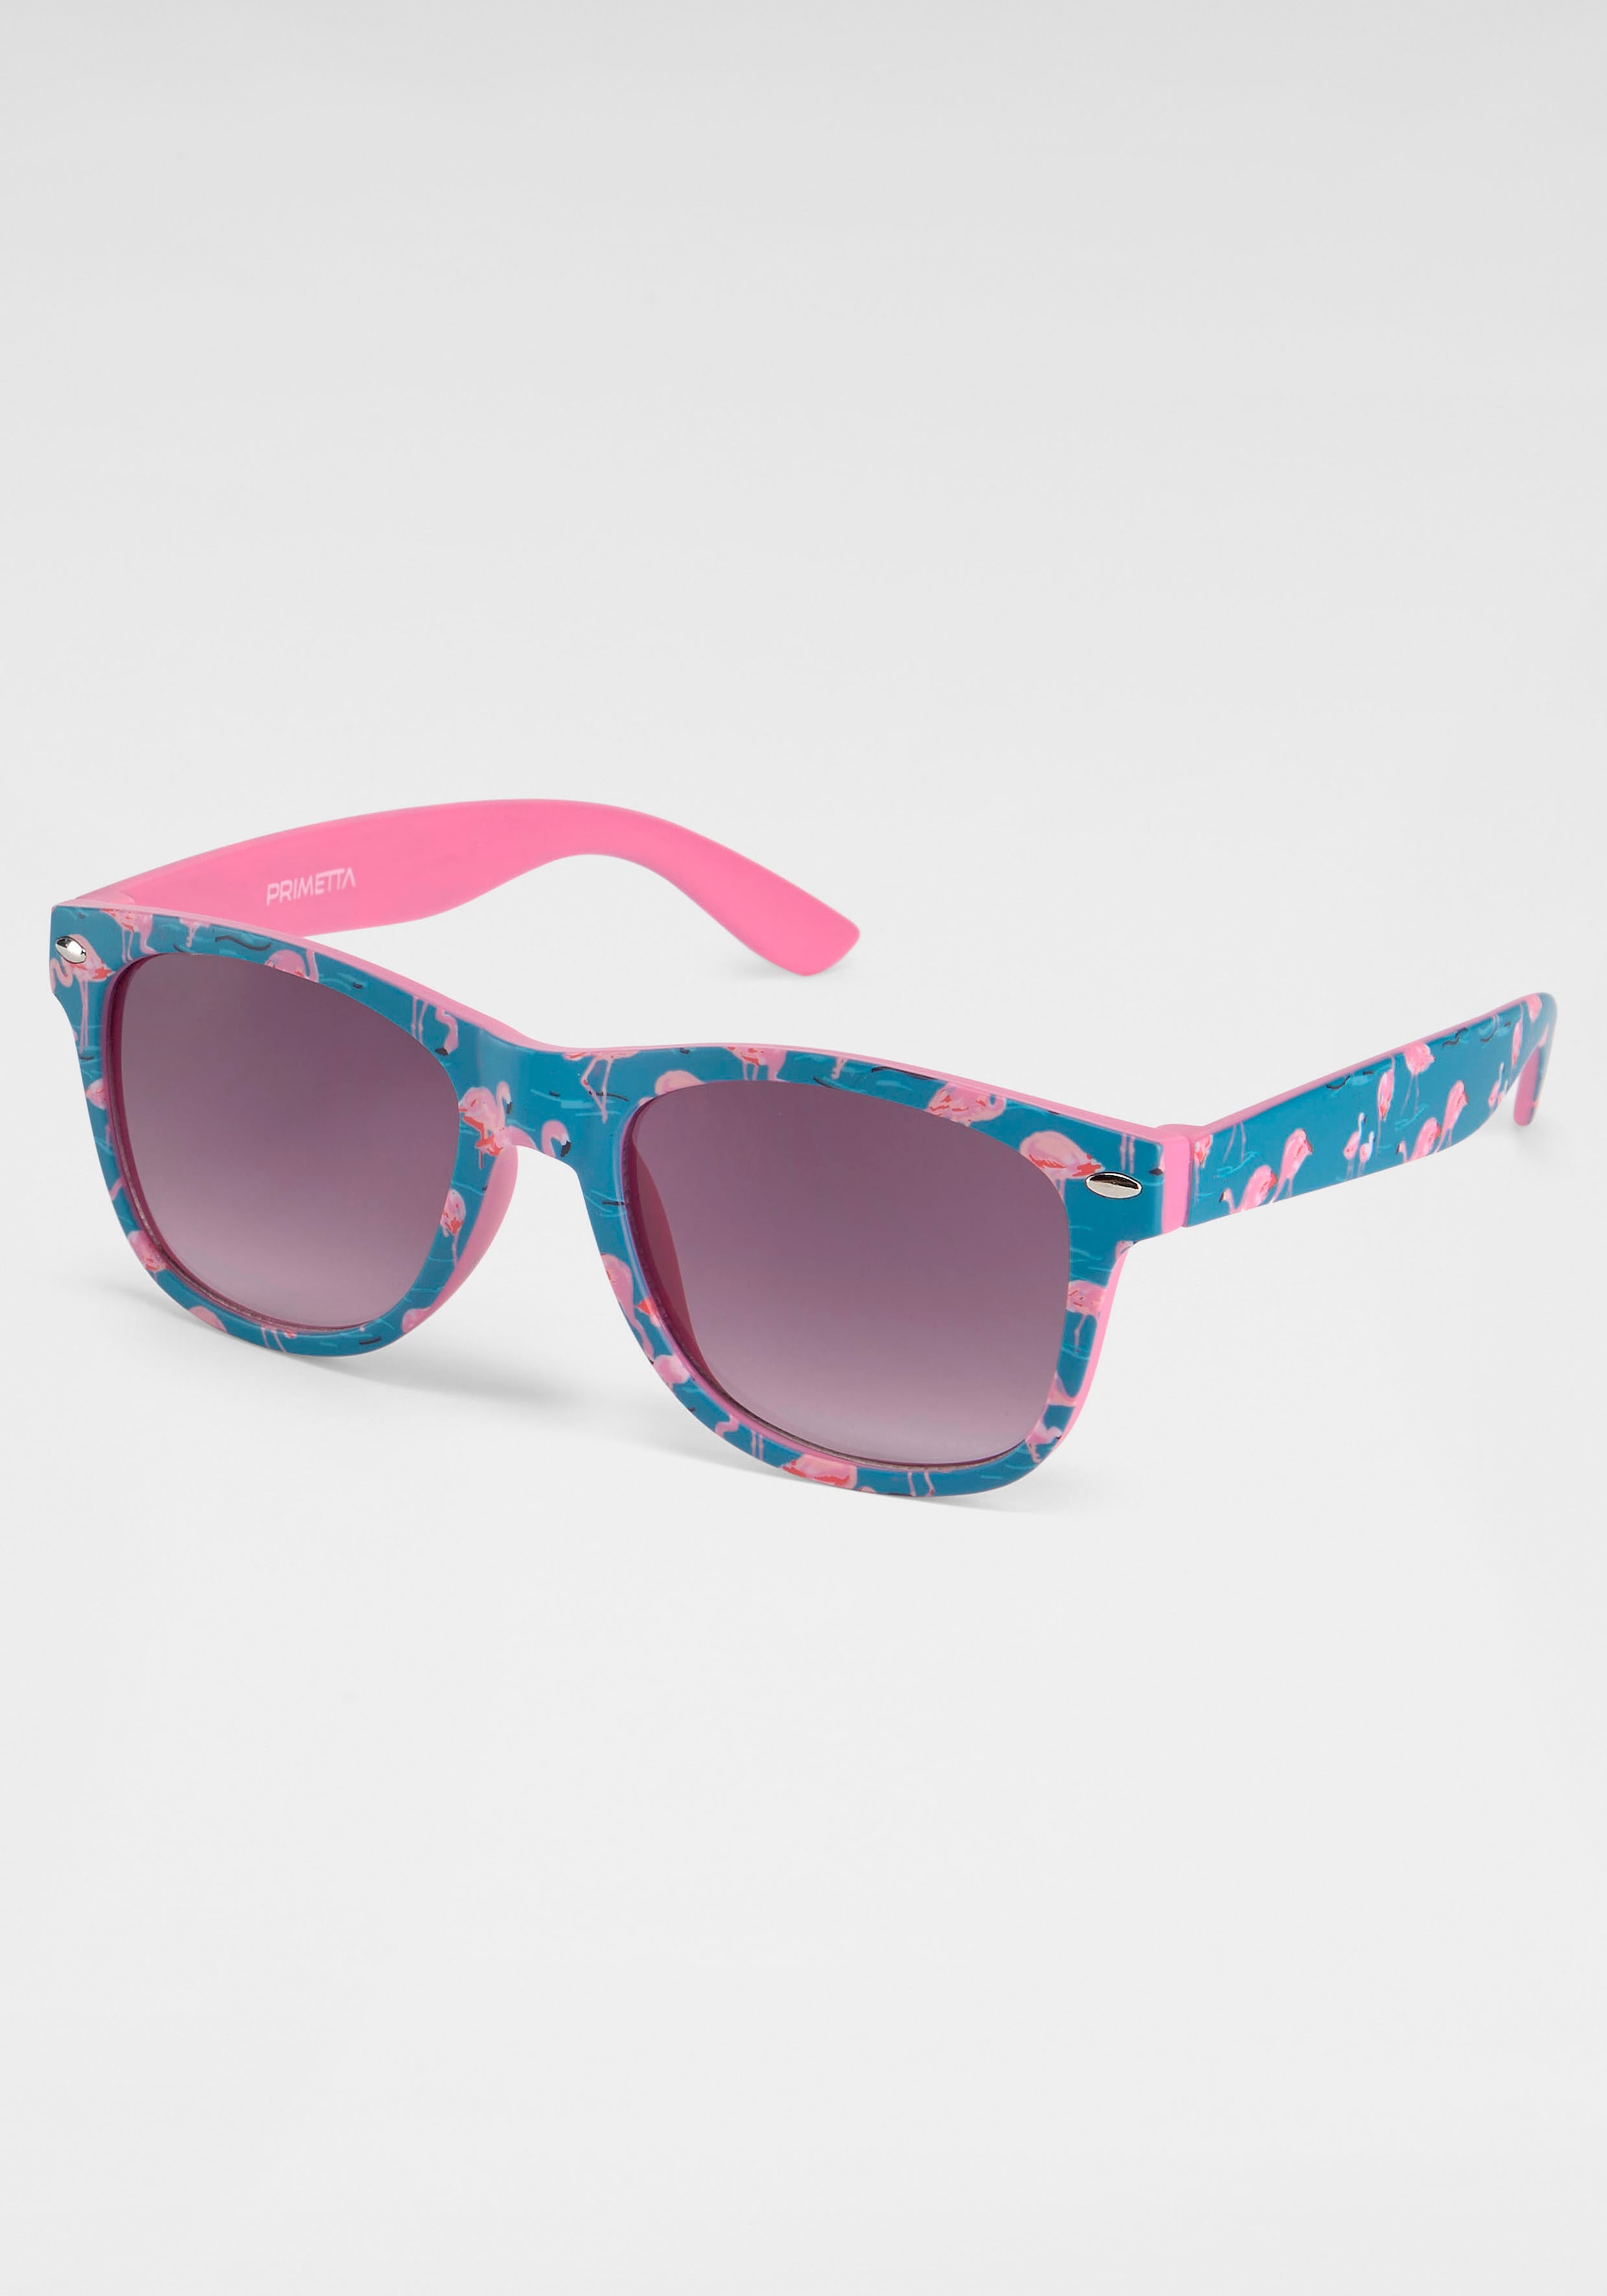 Eyewear PRIMETTA bei Sonnenbrille, mit Flamingos